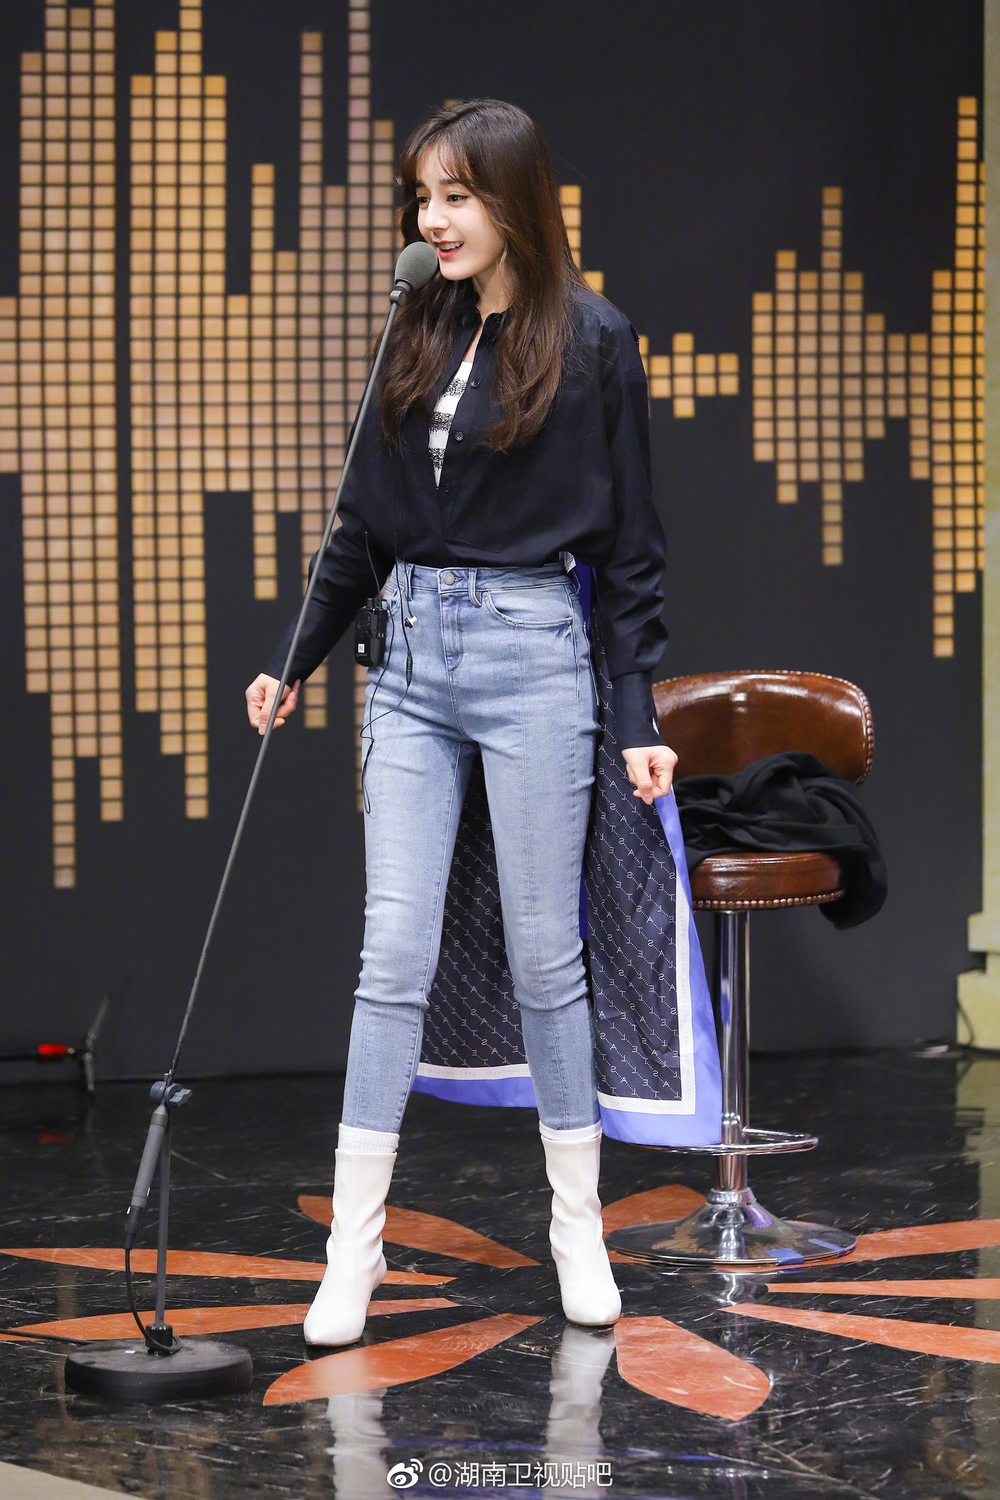 
Xuất hiện tại chương trình, cô nàng diện mẫu áo sơ mi có phần vạt dài phá cách được mix cùng quần jeans màu xanh và đôi boots cổ cao màu trắng vô cùng ấn tượng khiến toàn bộ khách mời "mê mẩn". 